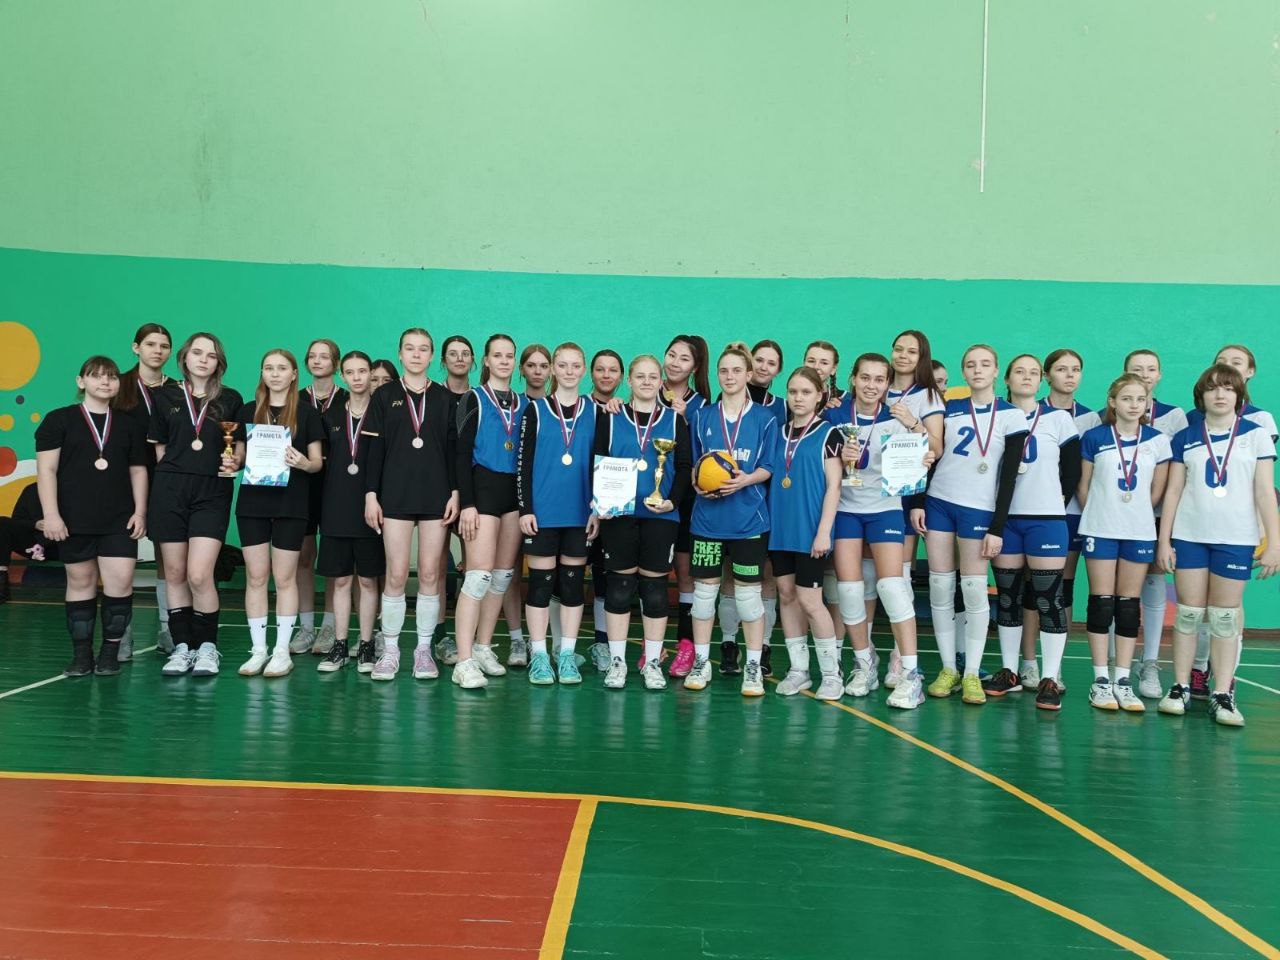 Ученица 9 класса — Полянская Лада стала бронзовым призером по волейболу в составе Сборной Волжского района.